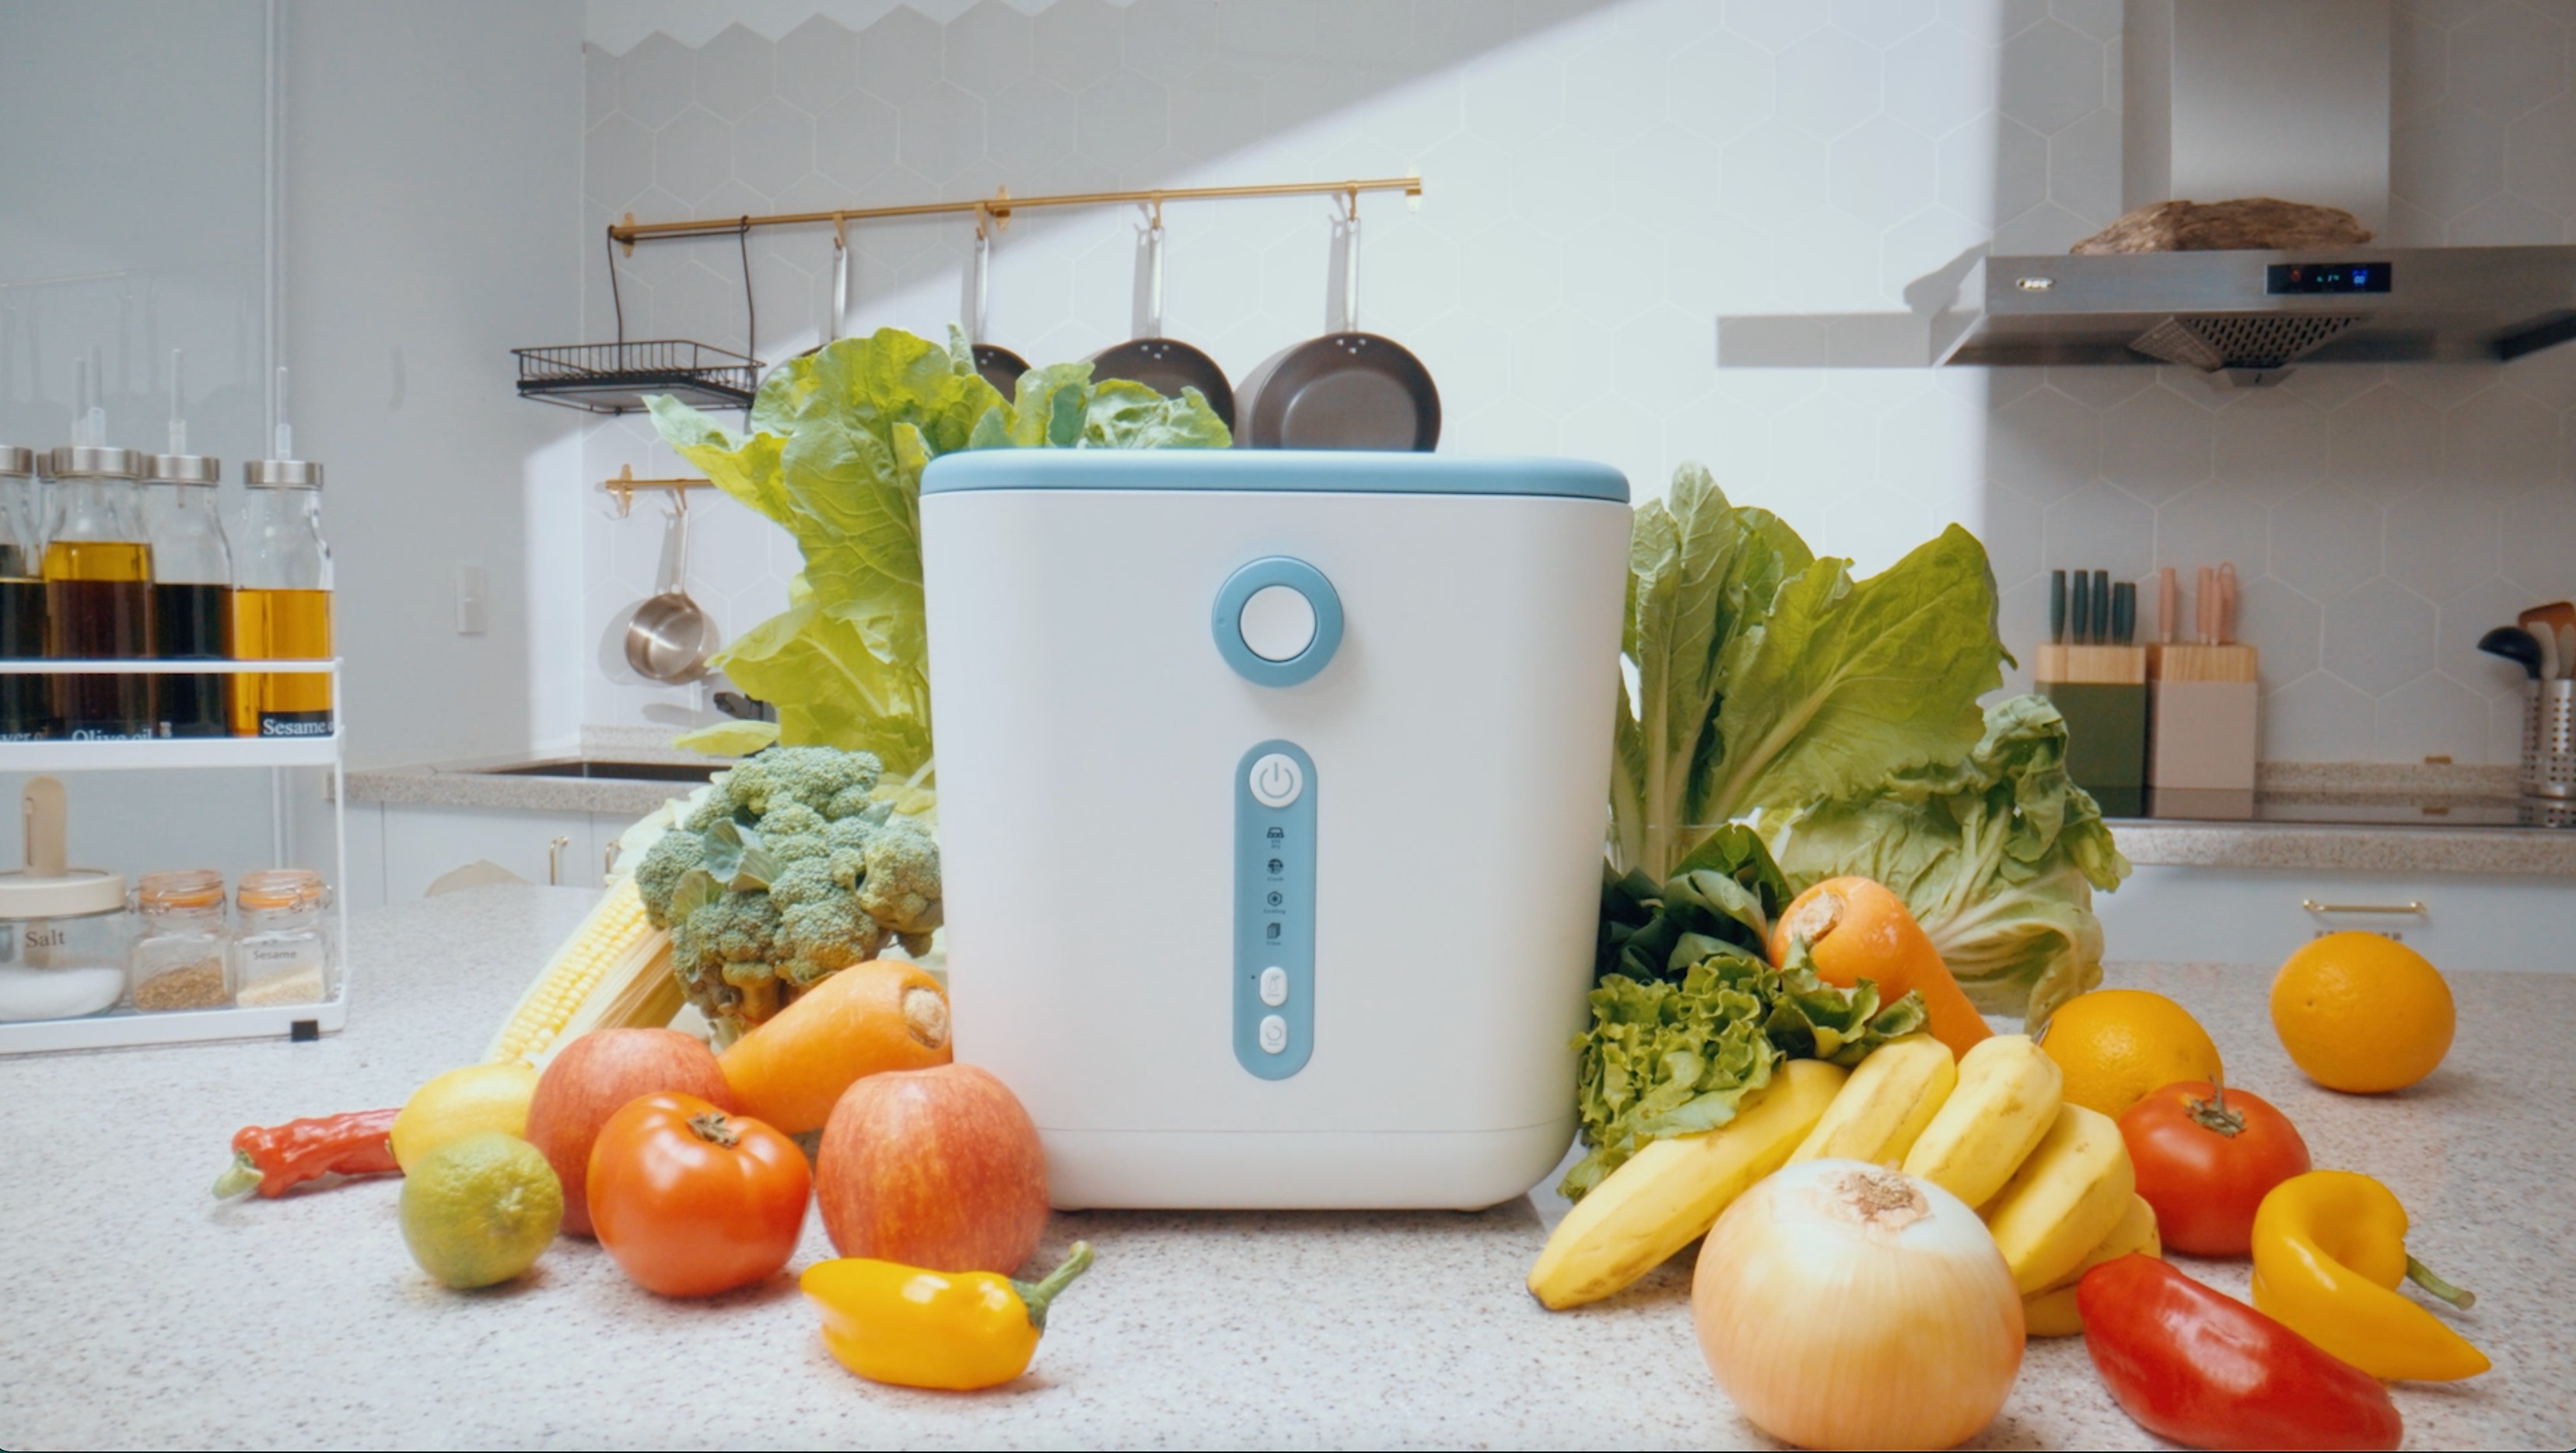 o n e - m e t e r 新 品 智 能 乾 燥 廚 餘 機 ， 3 公 升 容 量 首 創 雙 重 過 濾 除 臭 殺 菌 系 統 和 乾 燥 廚 餘 技 術 ， 藍 白 機 身 平 易 近 人 、 視 覺 清 爽 。 （ 上 洋 產 業 提 供 ） 